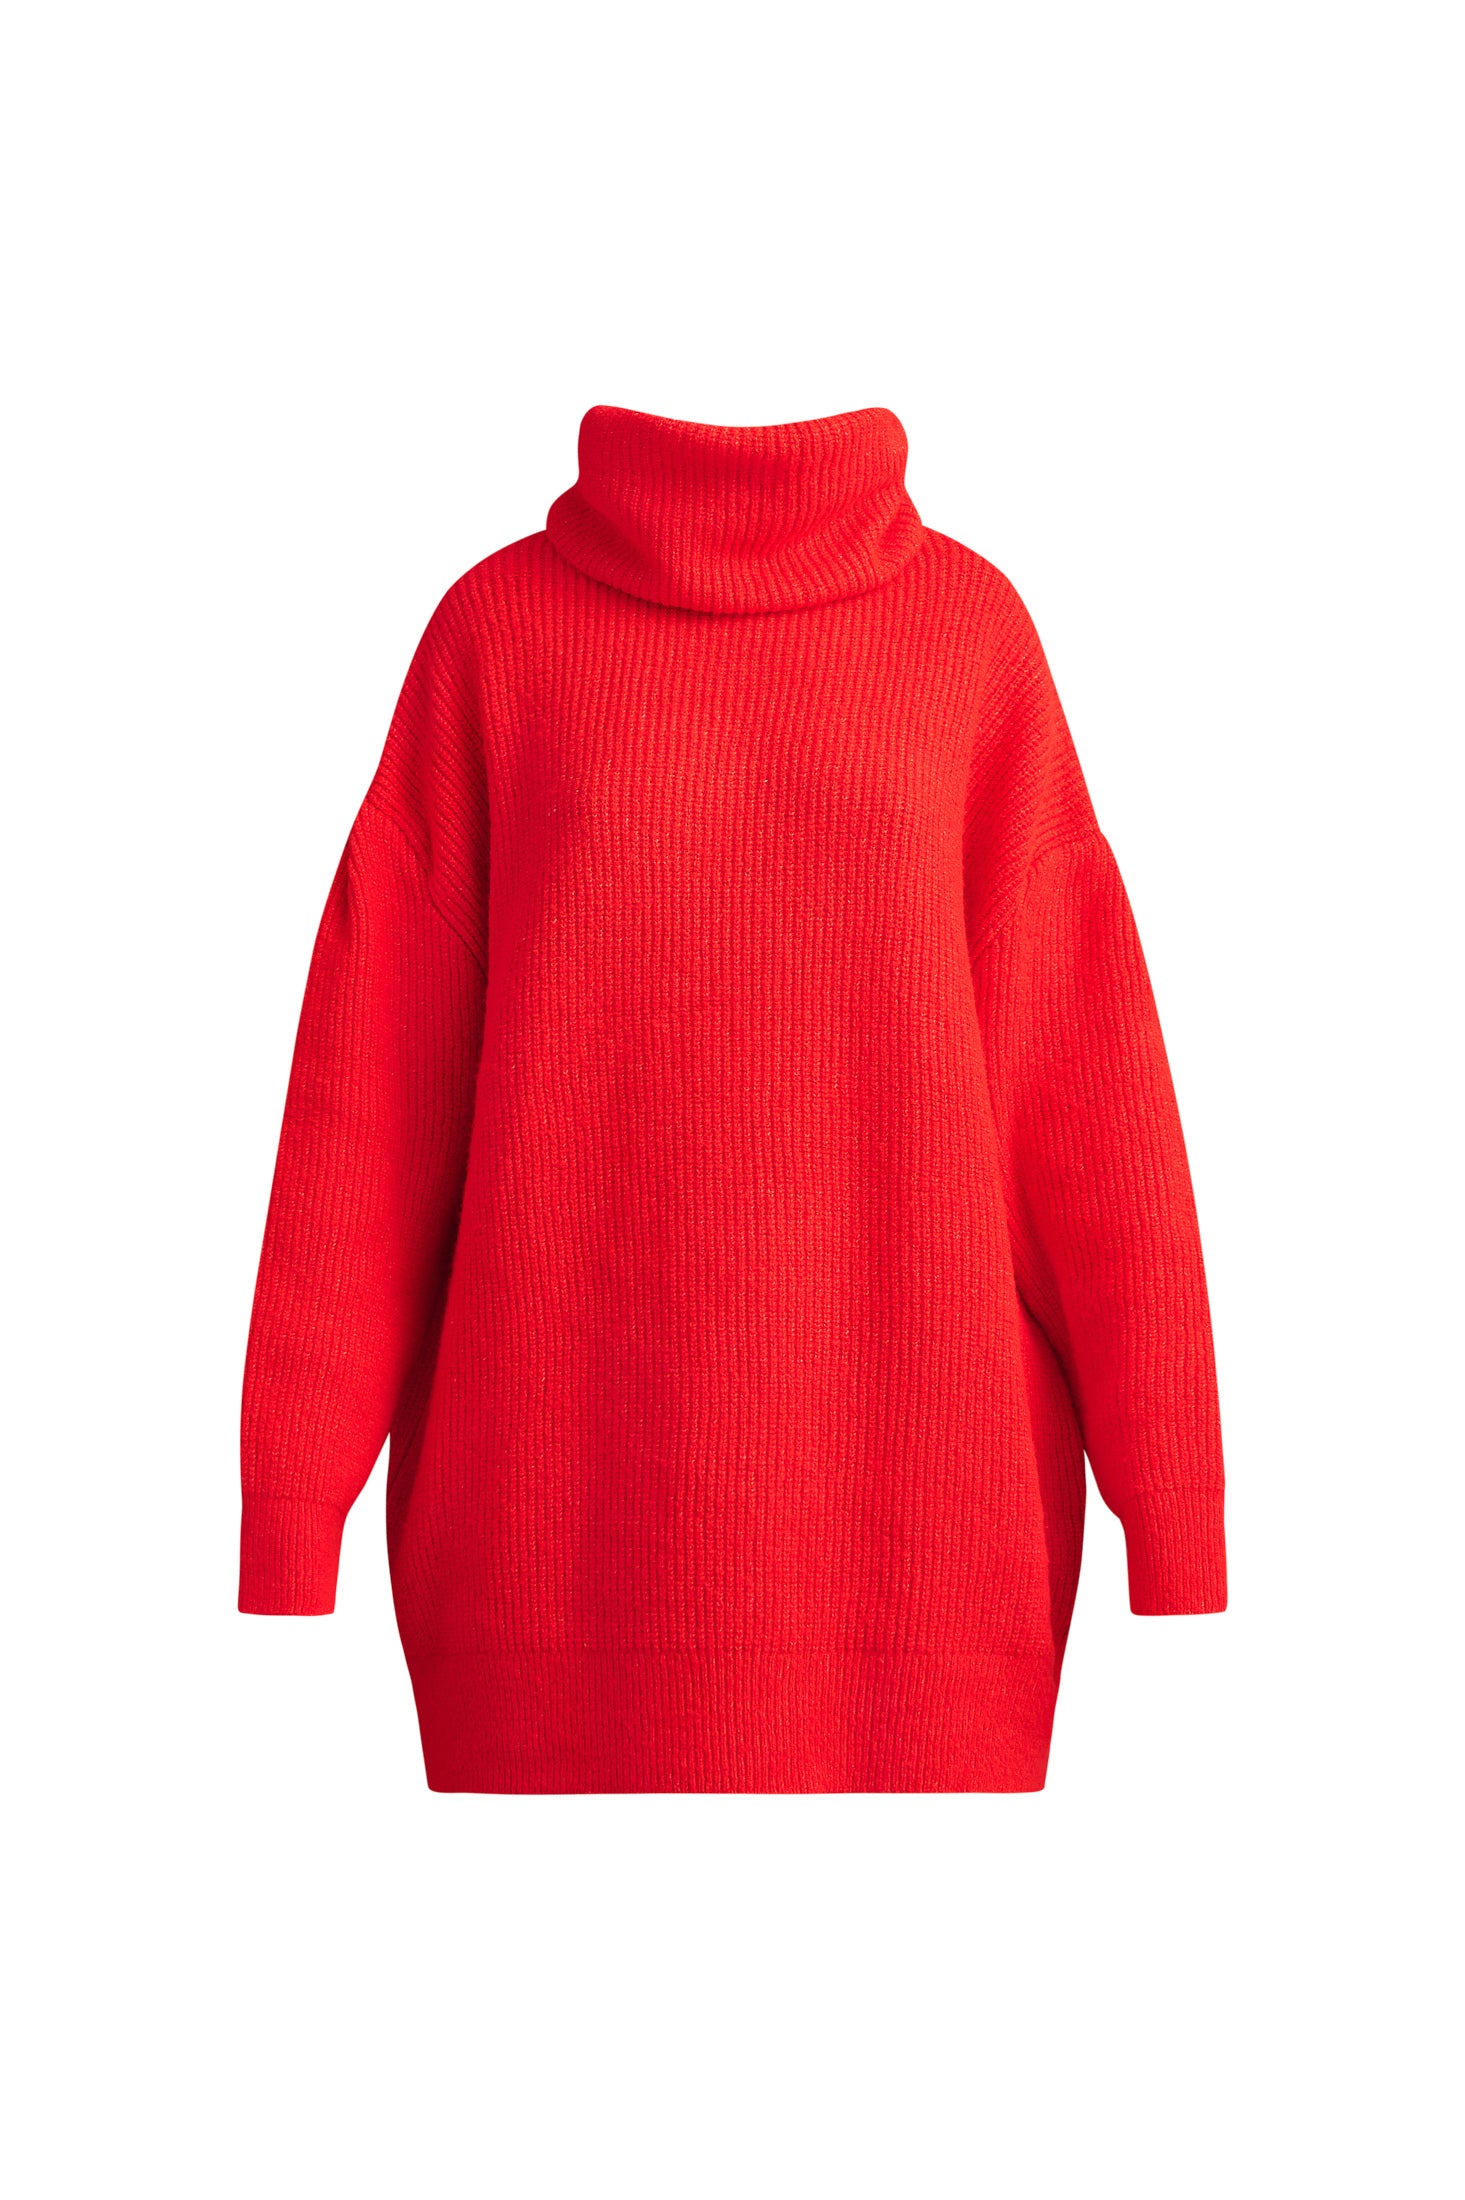 Karavan Penny Sweater Coral Red